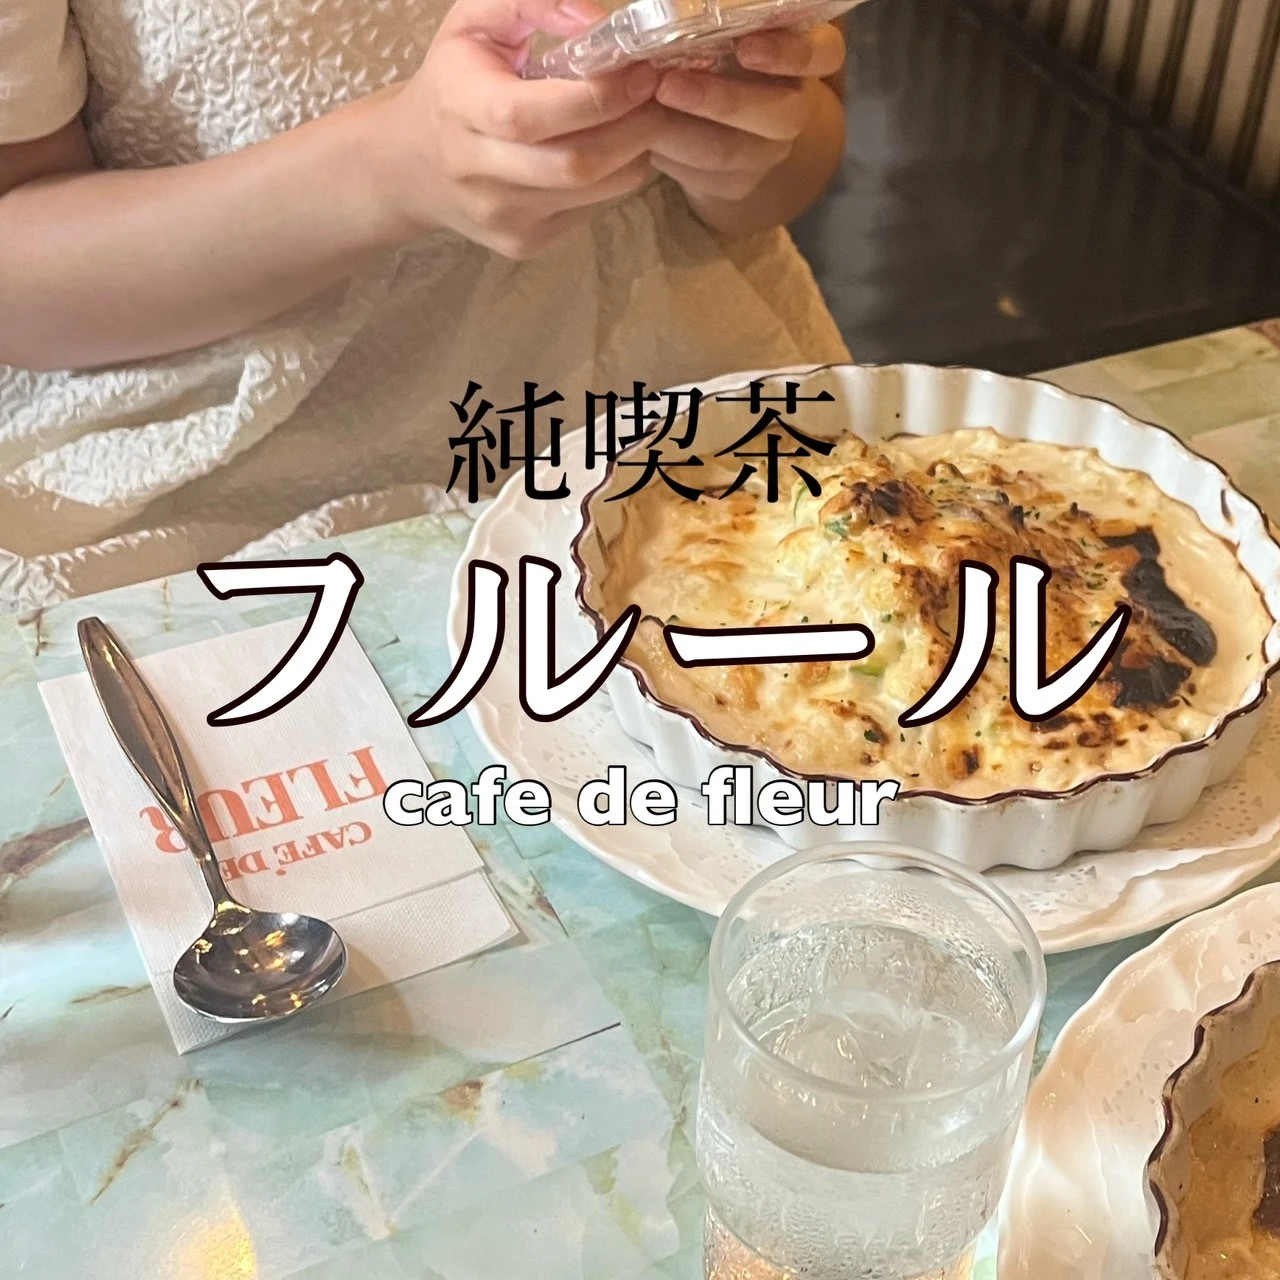 【純喫茶】京都四条から電車で15分。「純喫茶フルール」でのんびりランチ🍽_1_1